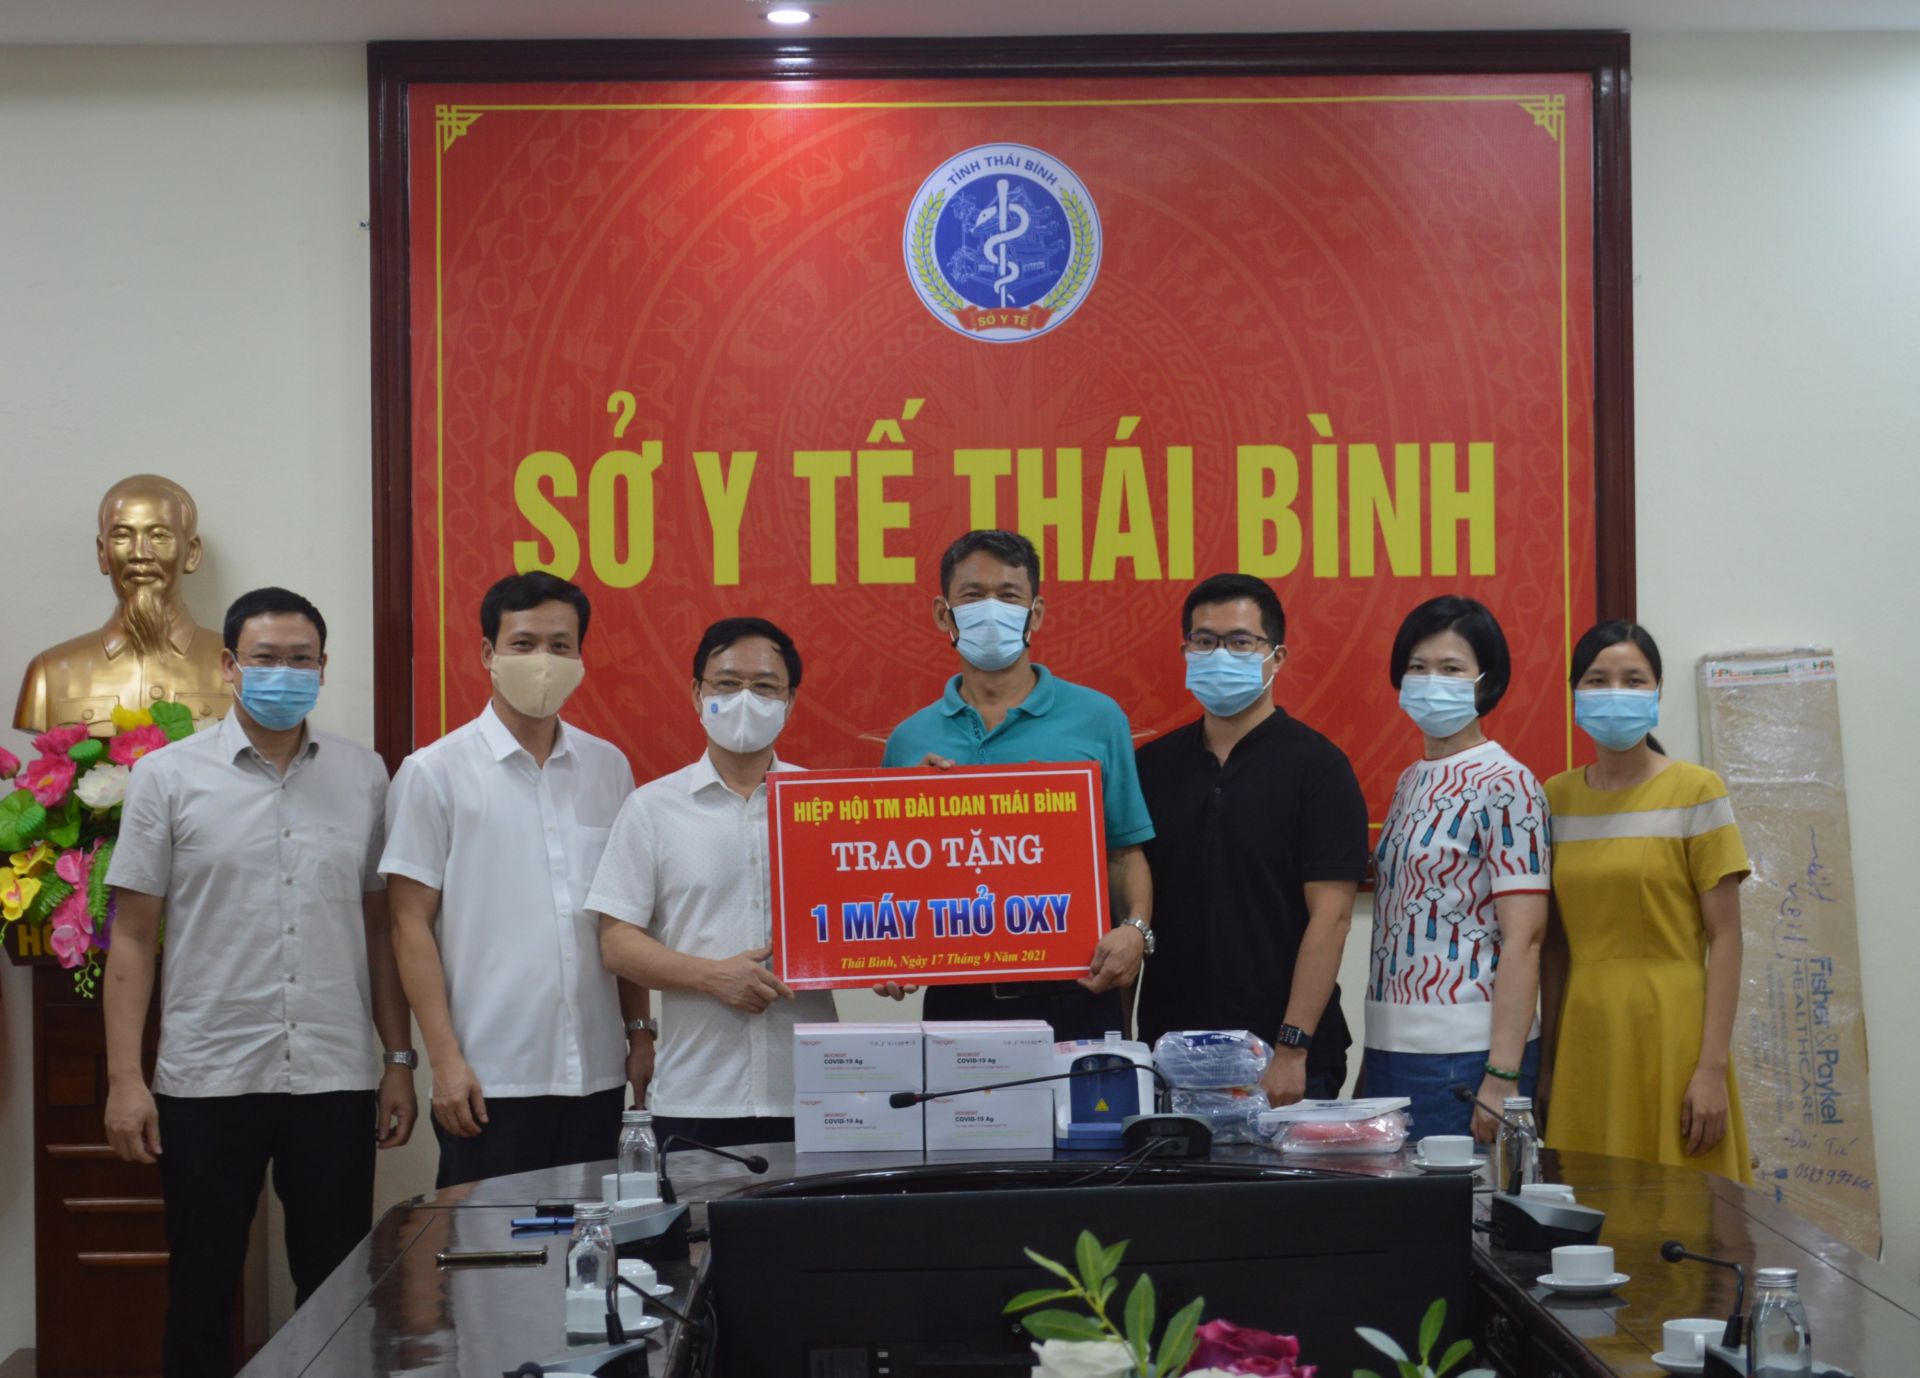 Hiệp hội Thương mại Đài Loan, chi nhánh Thái Bình đã trao tặng 02 máy thở oxy với tổng trị giá trên 260 triệu đồng cho Sở Y tế và Bệnh viện Đa khoa tỉnh